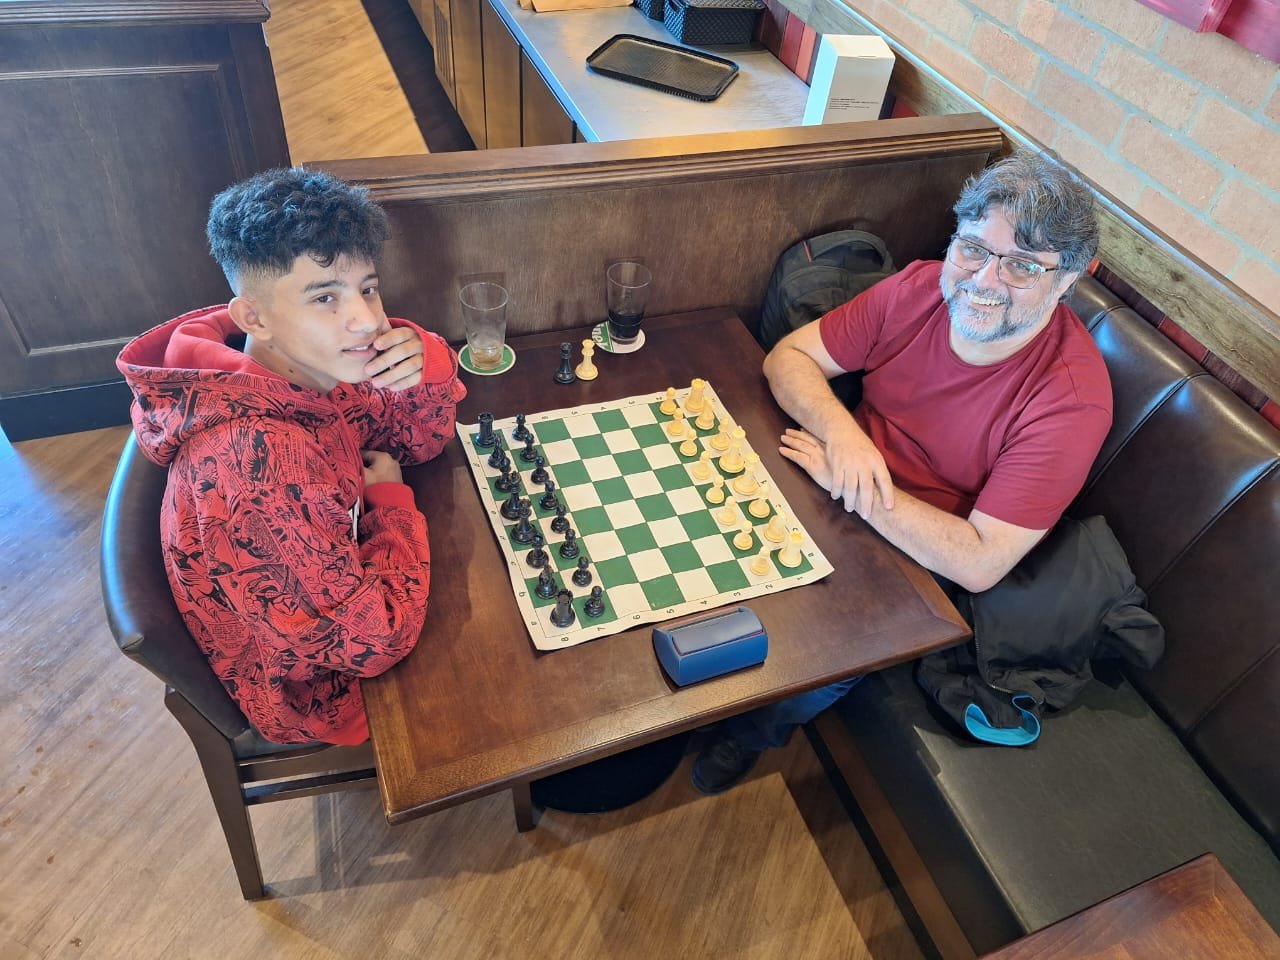 Campeão brasileiro de xadrez participa de partida simultânea